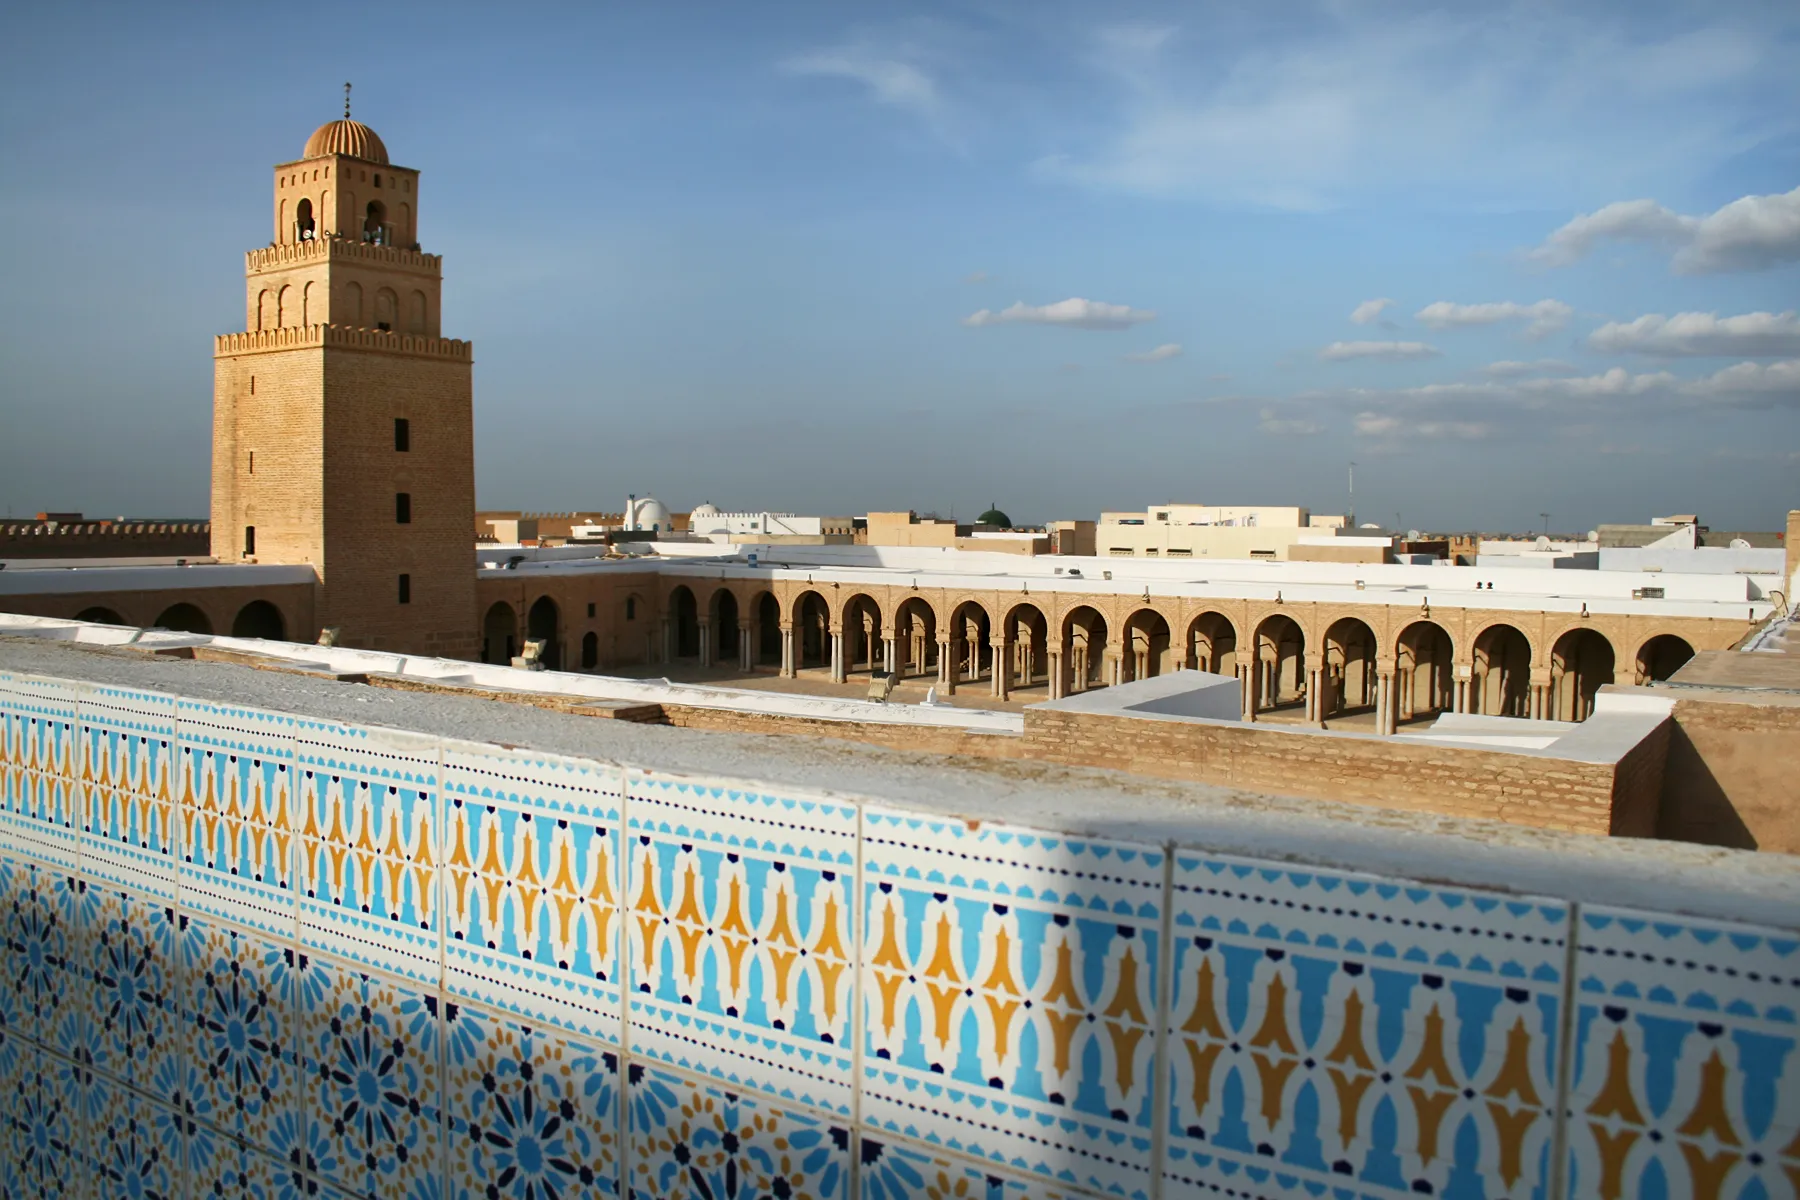 La grande mosquée de Kairouan, une ville du désert dans le nord de la Tunisie. © iStock / brunette